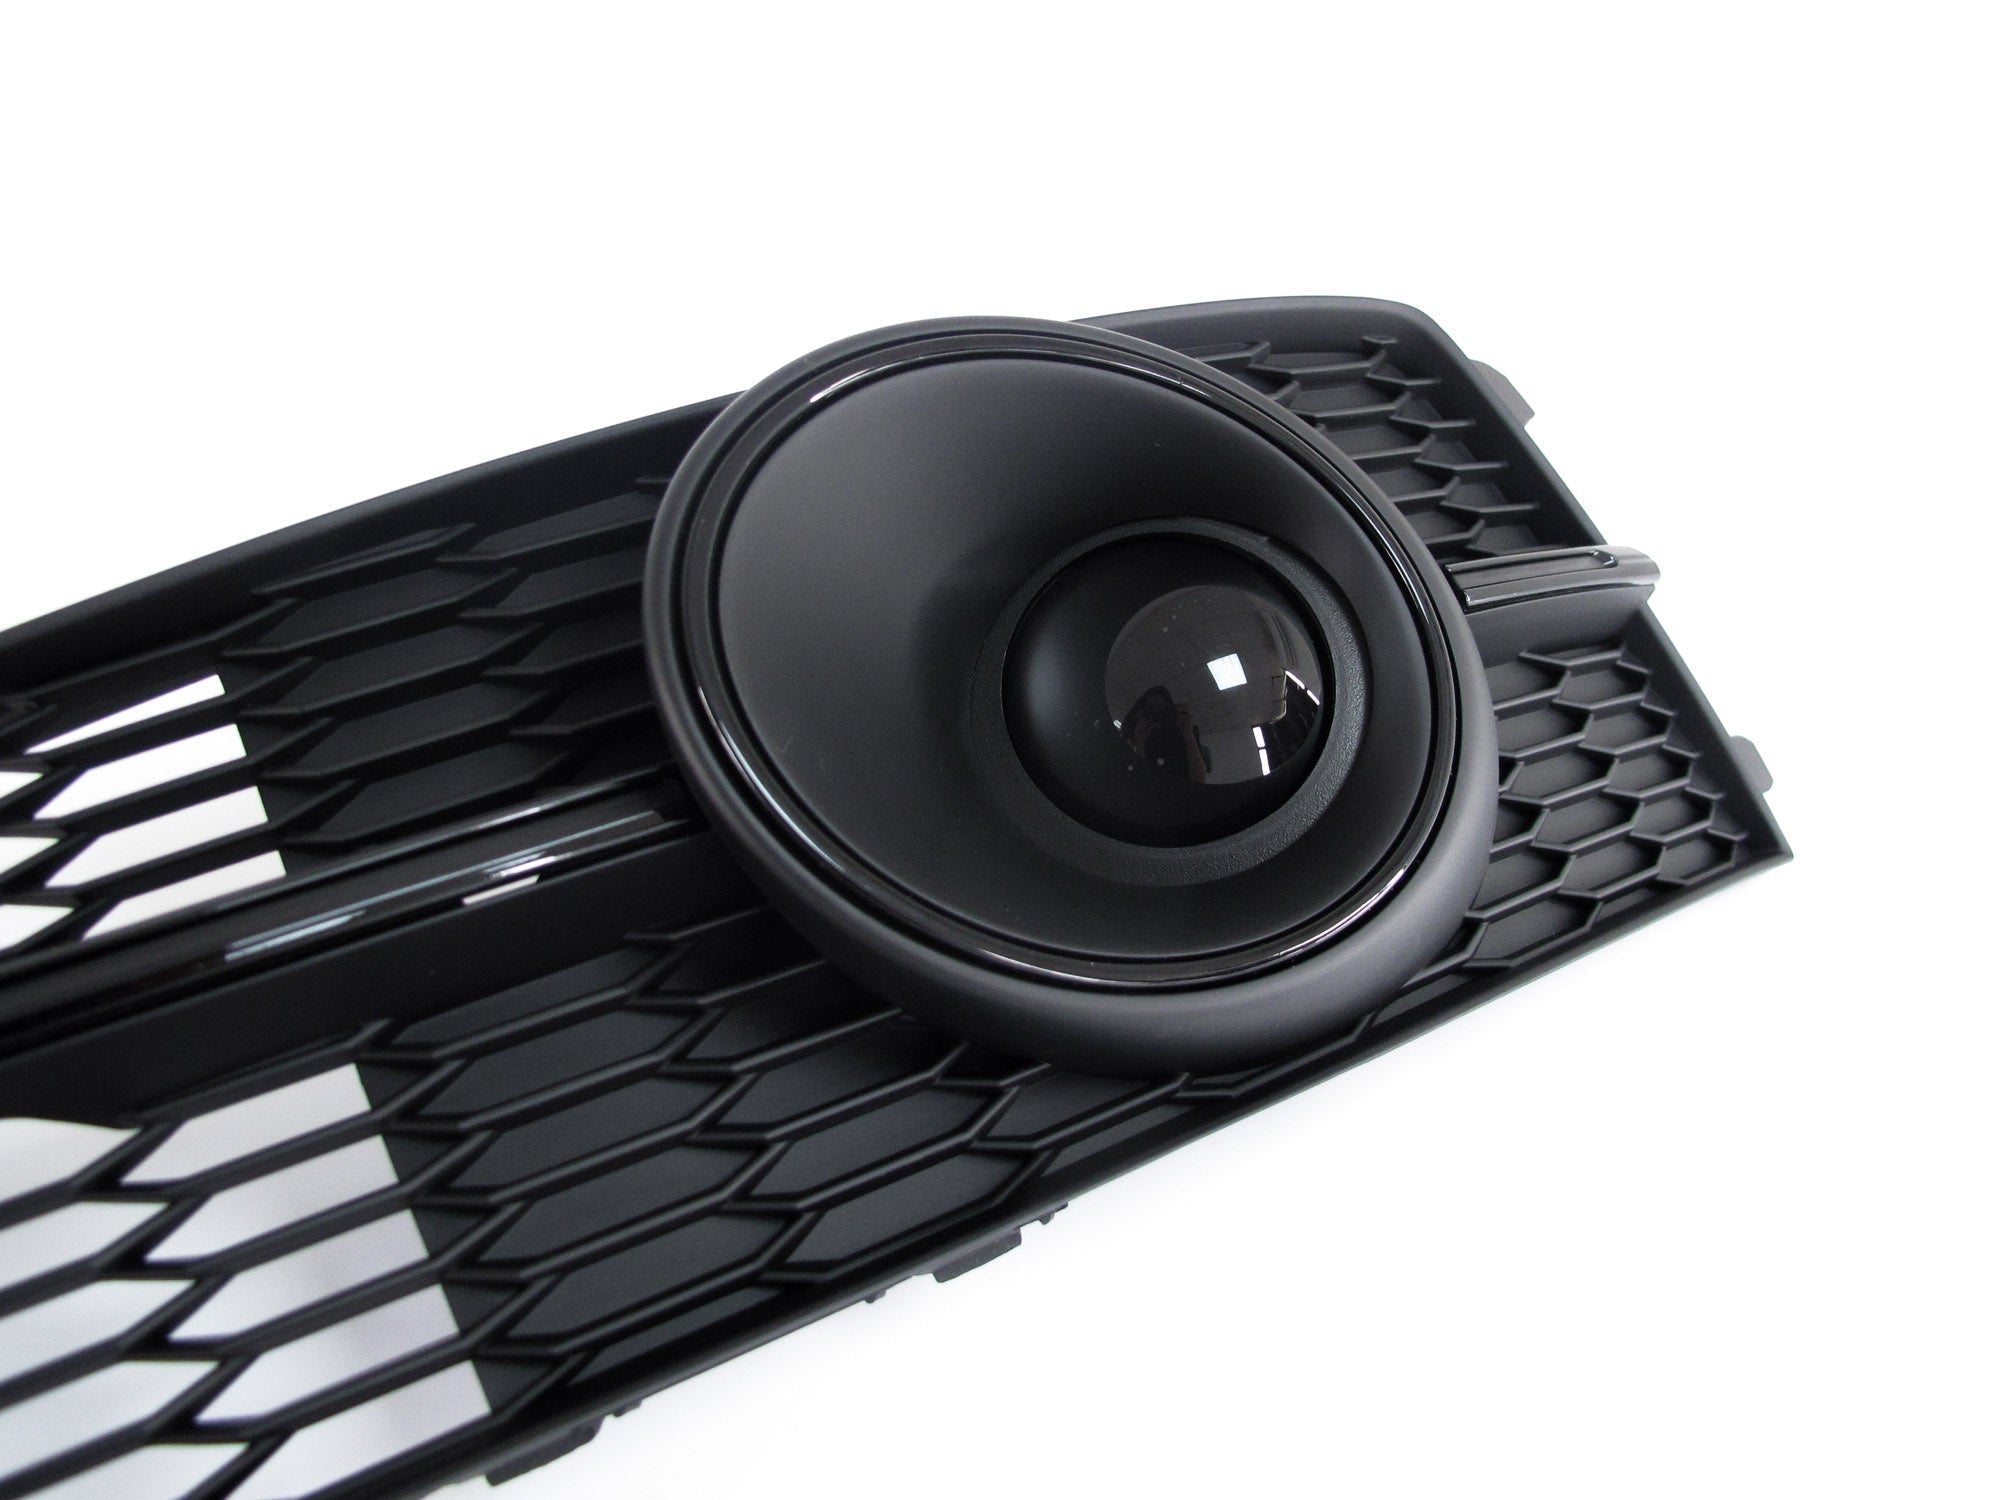 ✔️ Top-Qualität Audi A6 C7 Nebelscheinwerfer Gitter - Perfekter Ersatz 